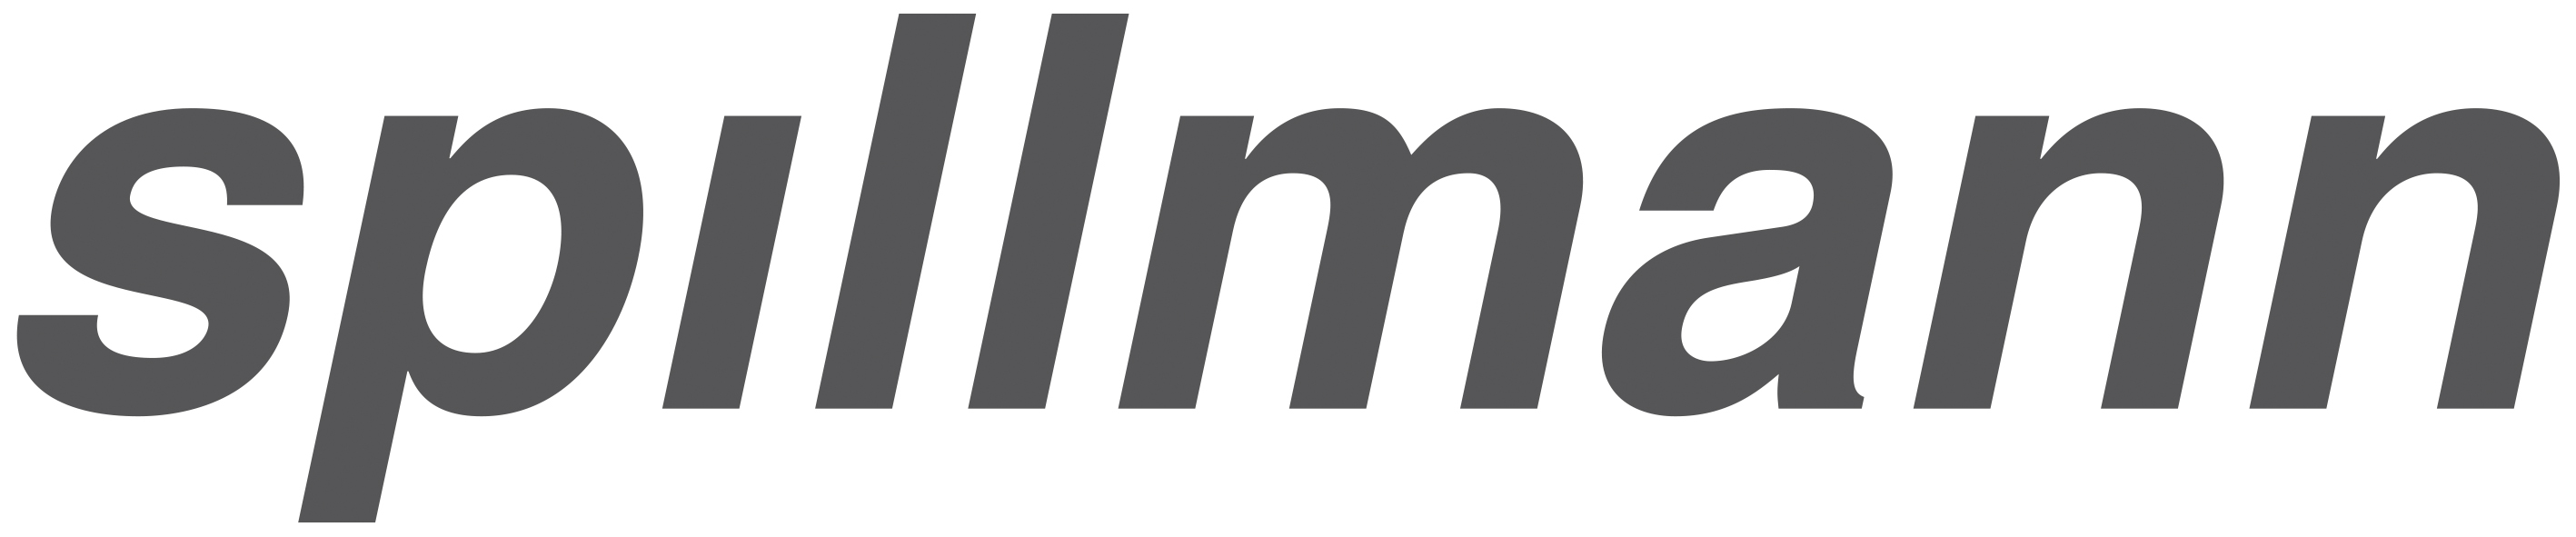 Logo_Spillmann